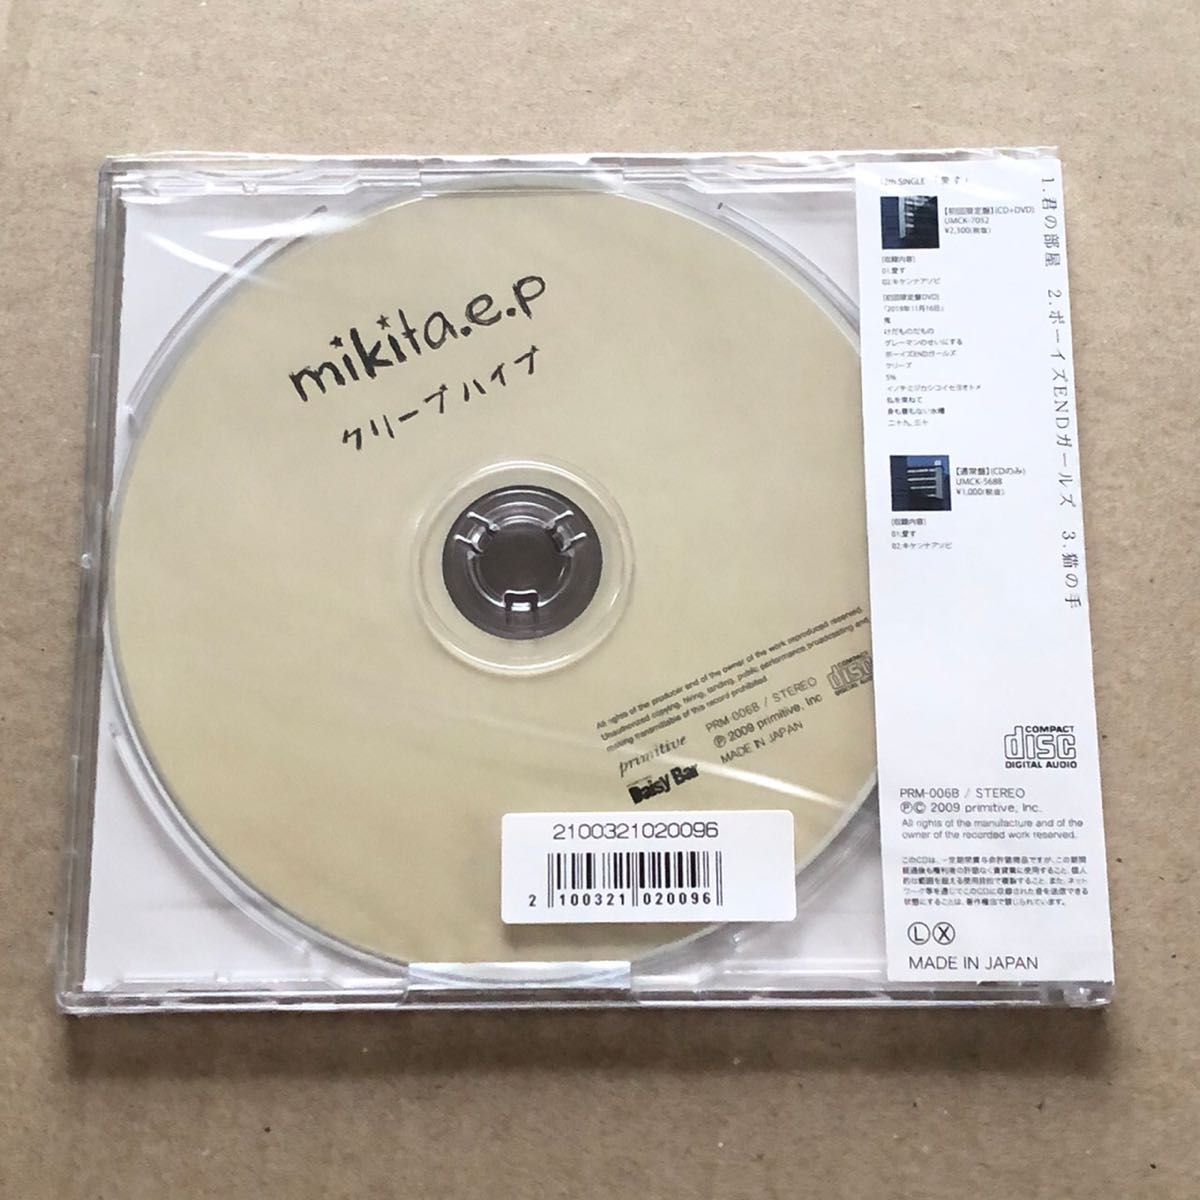 クリープハイプ CD mikita.e.p